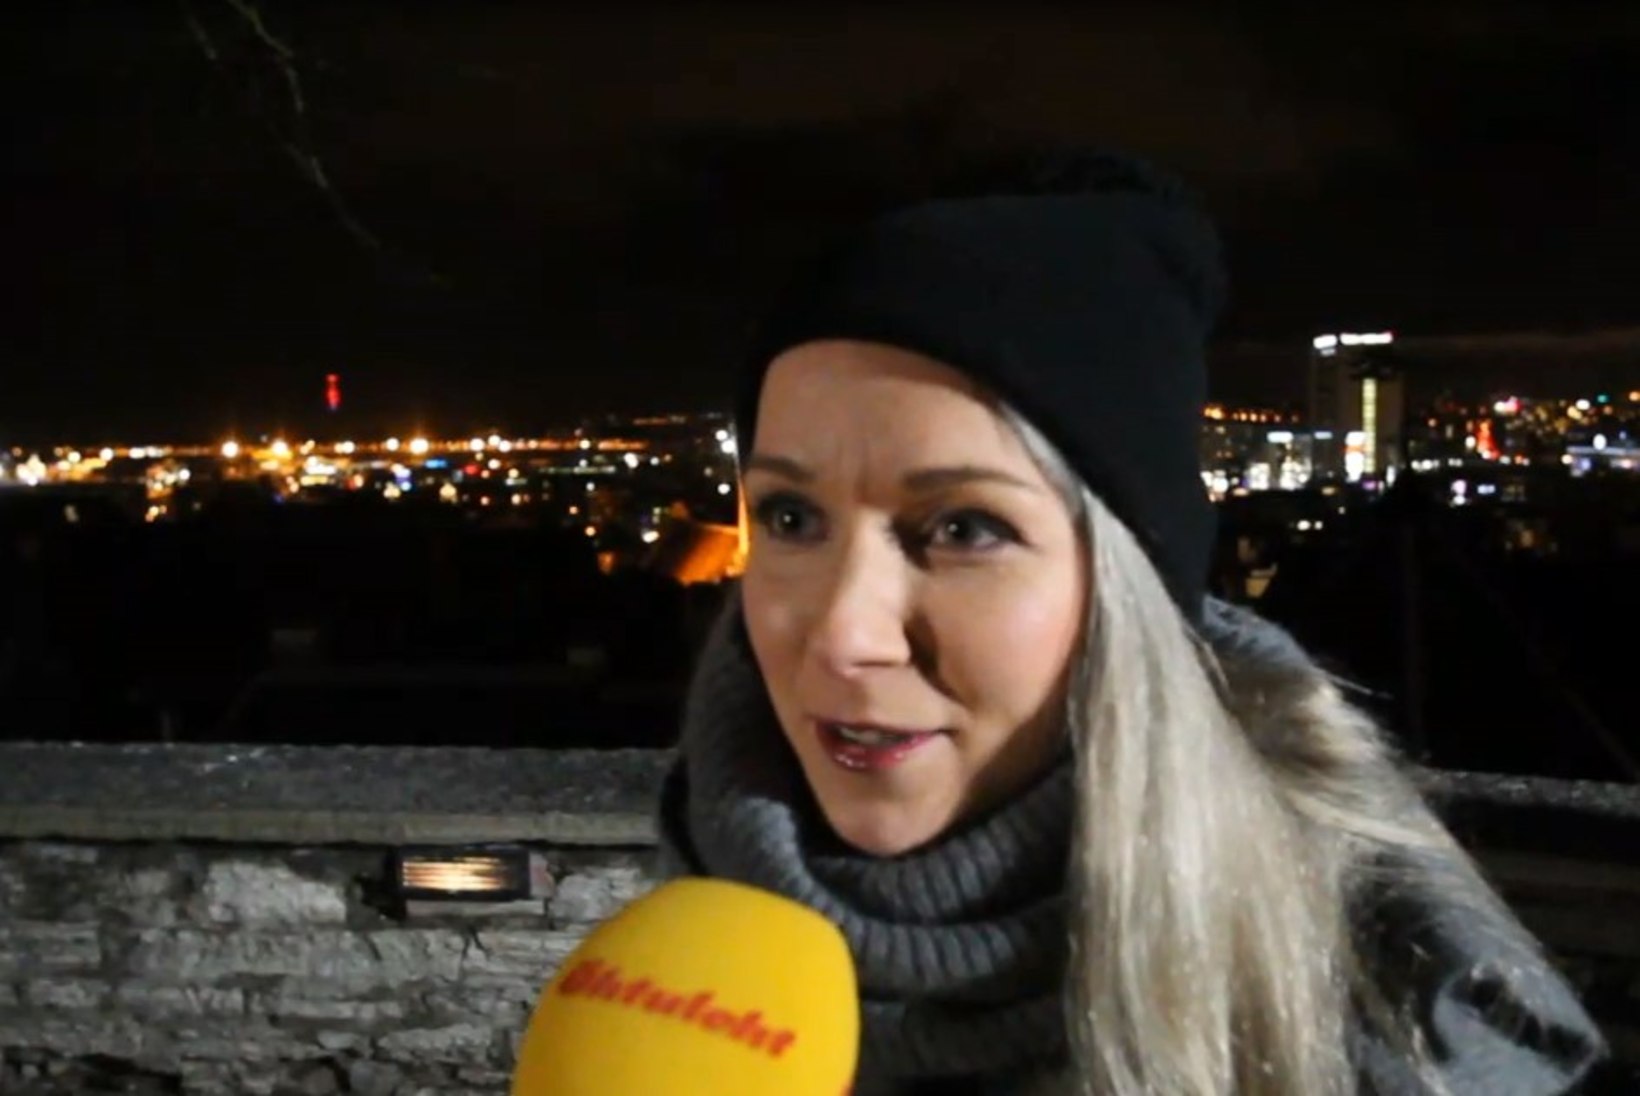 ÕHTULEHE VIDEO | Lenna Kuurmaa: kui inimesed tahavad tänaval muusikat teha, siis andku minna!